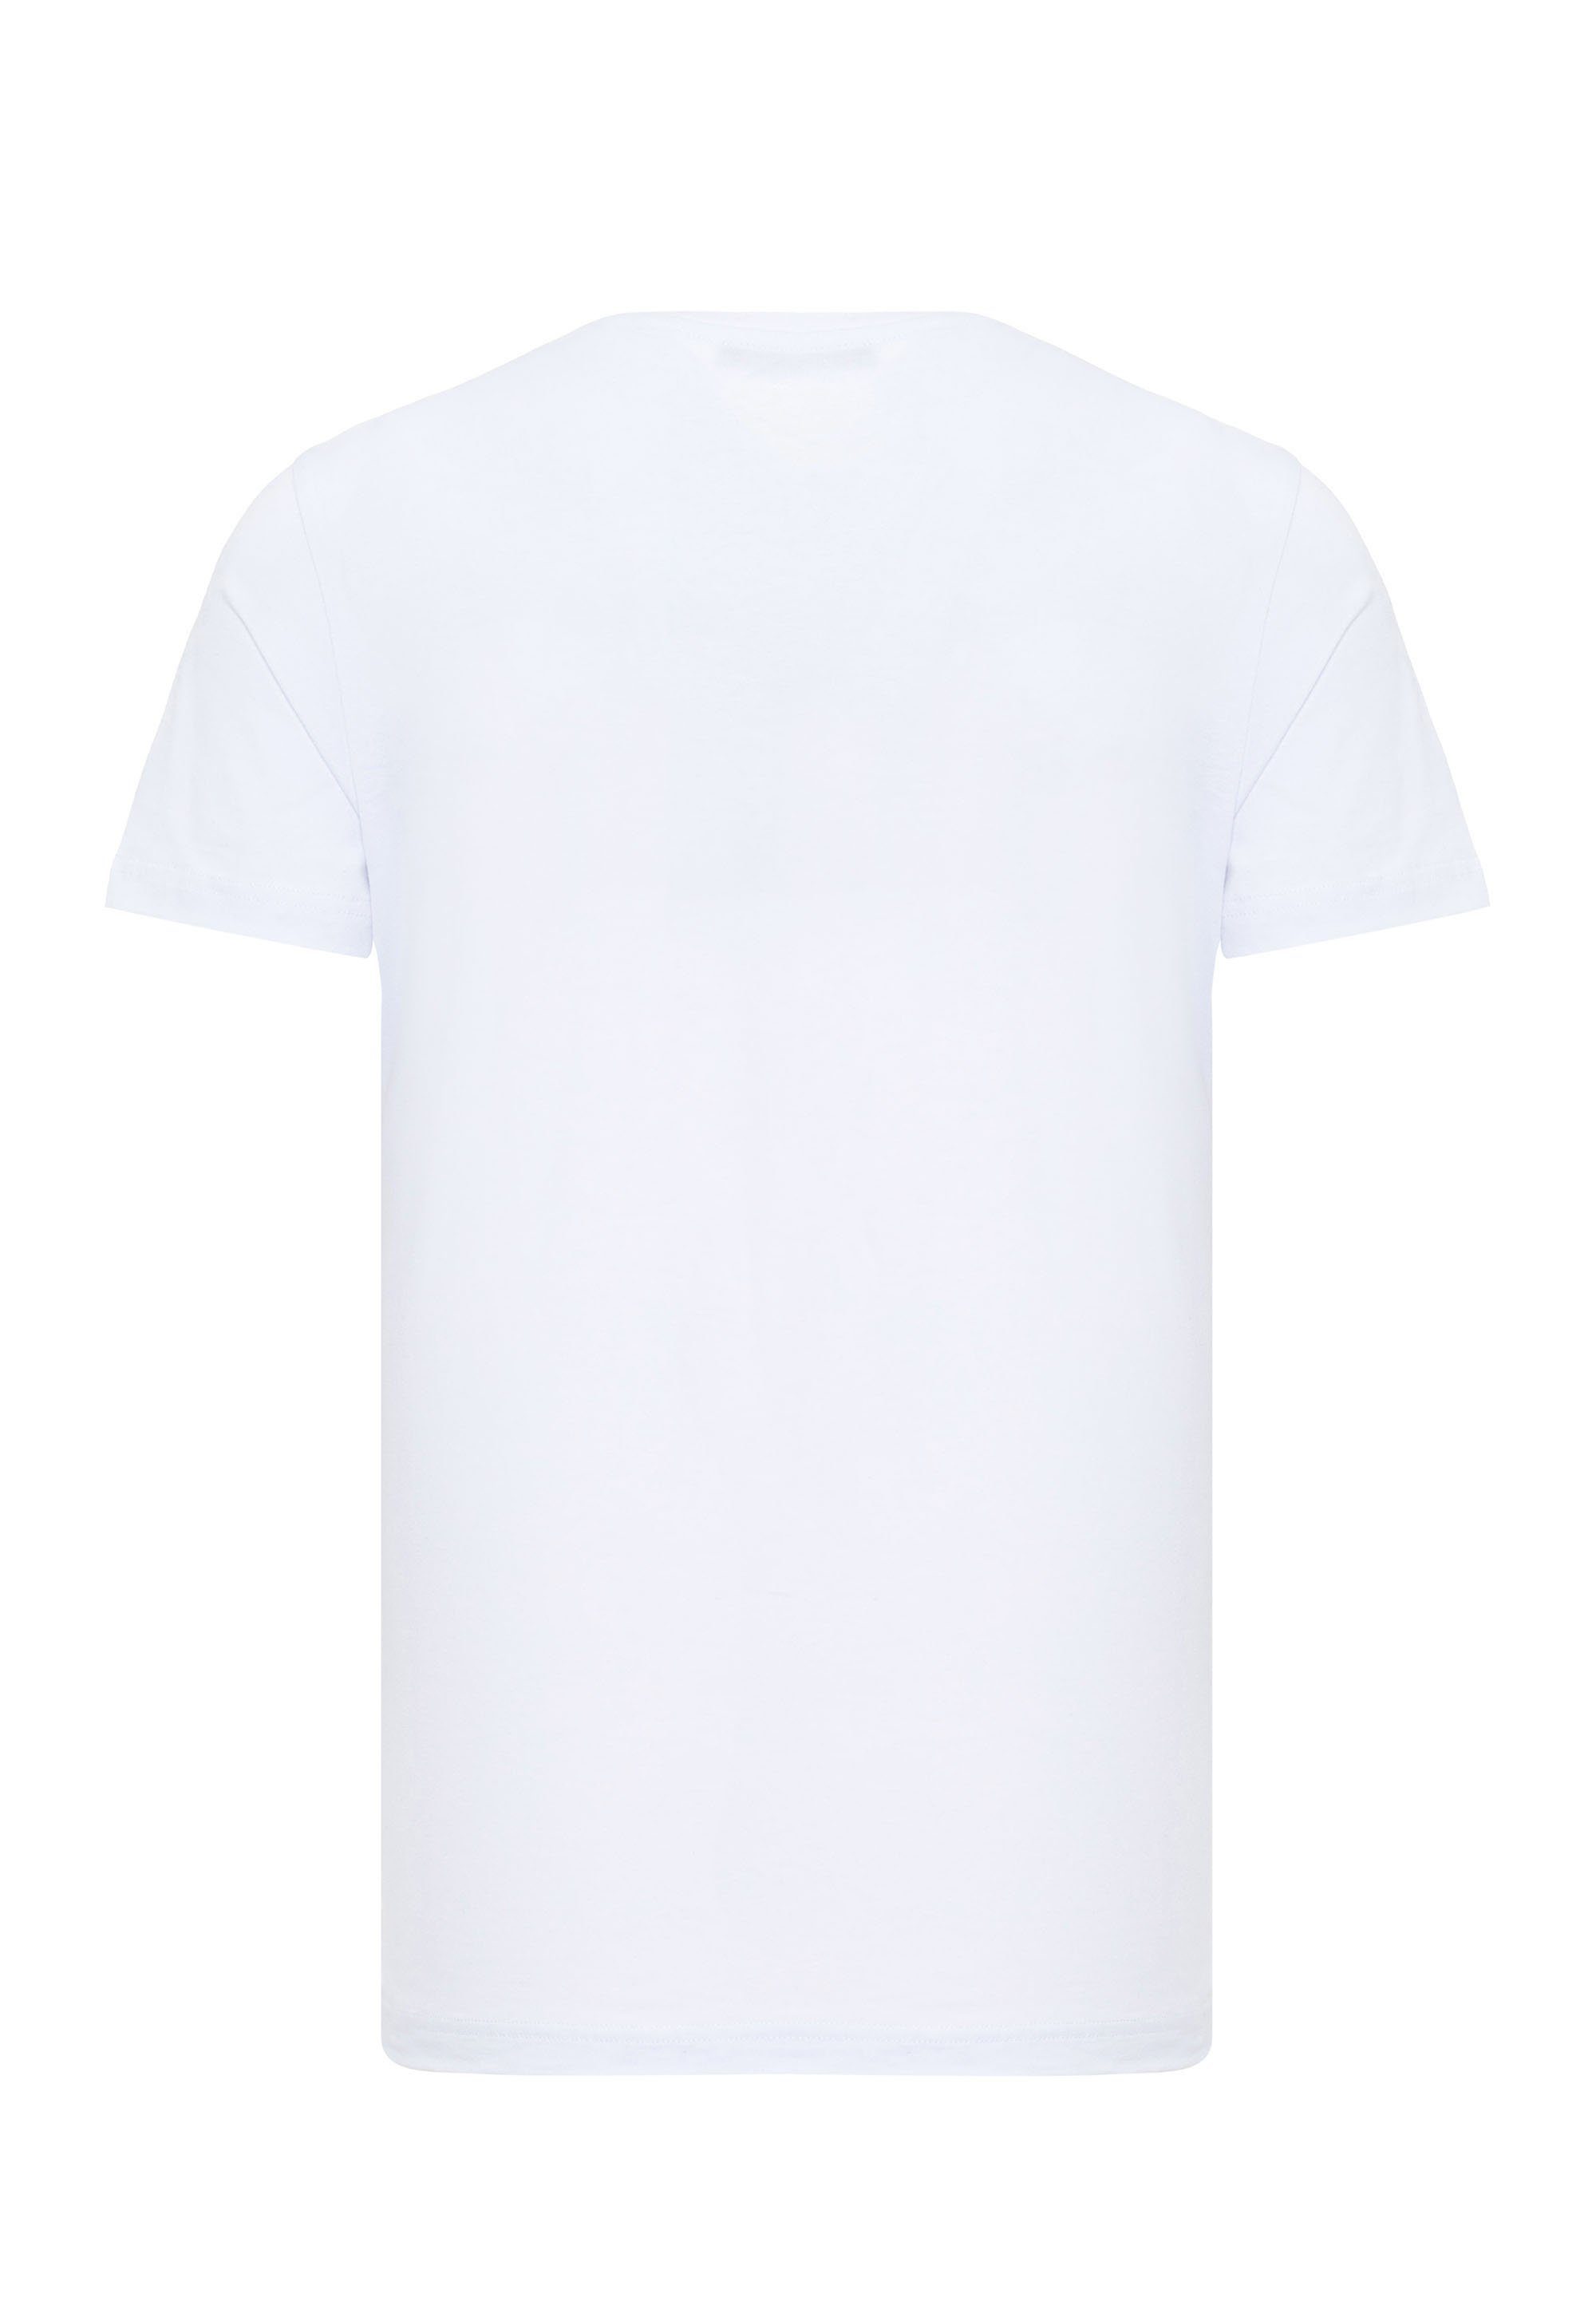 & T-Shirt Cipo Baxx Print coolem mit weiß